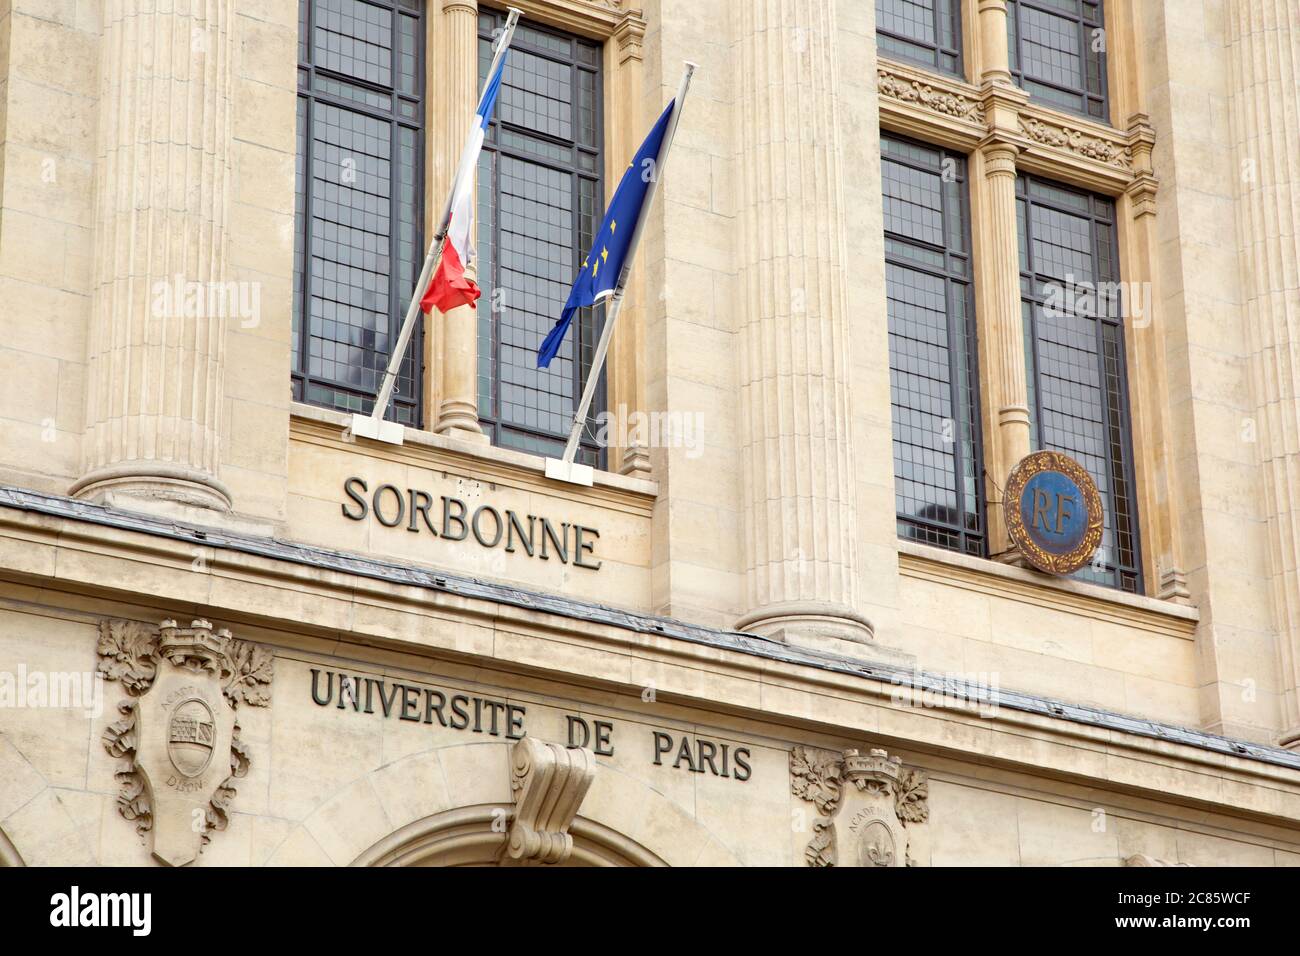 Sorbonne, university of Paris Stock Photo